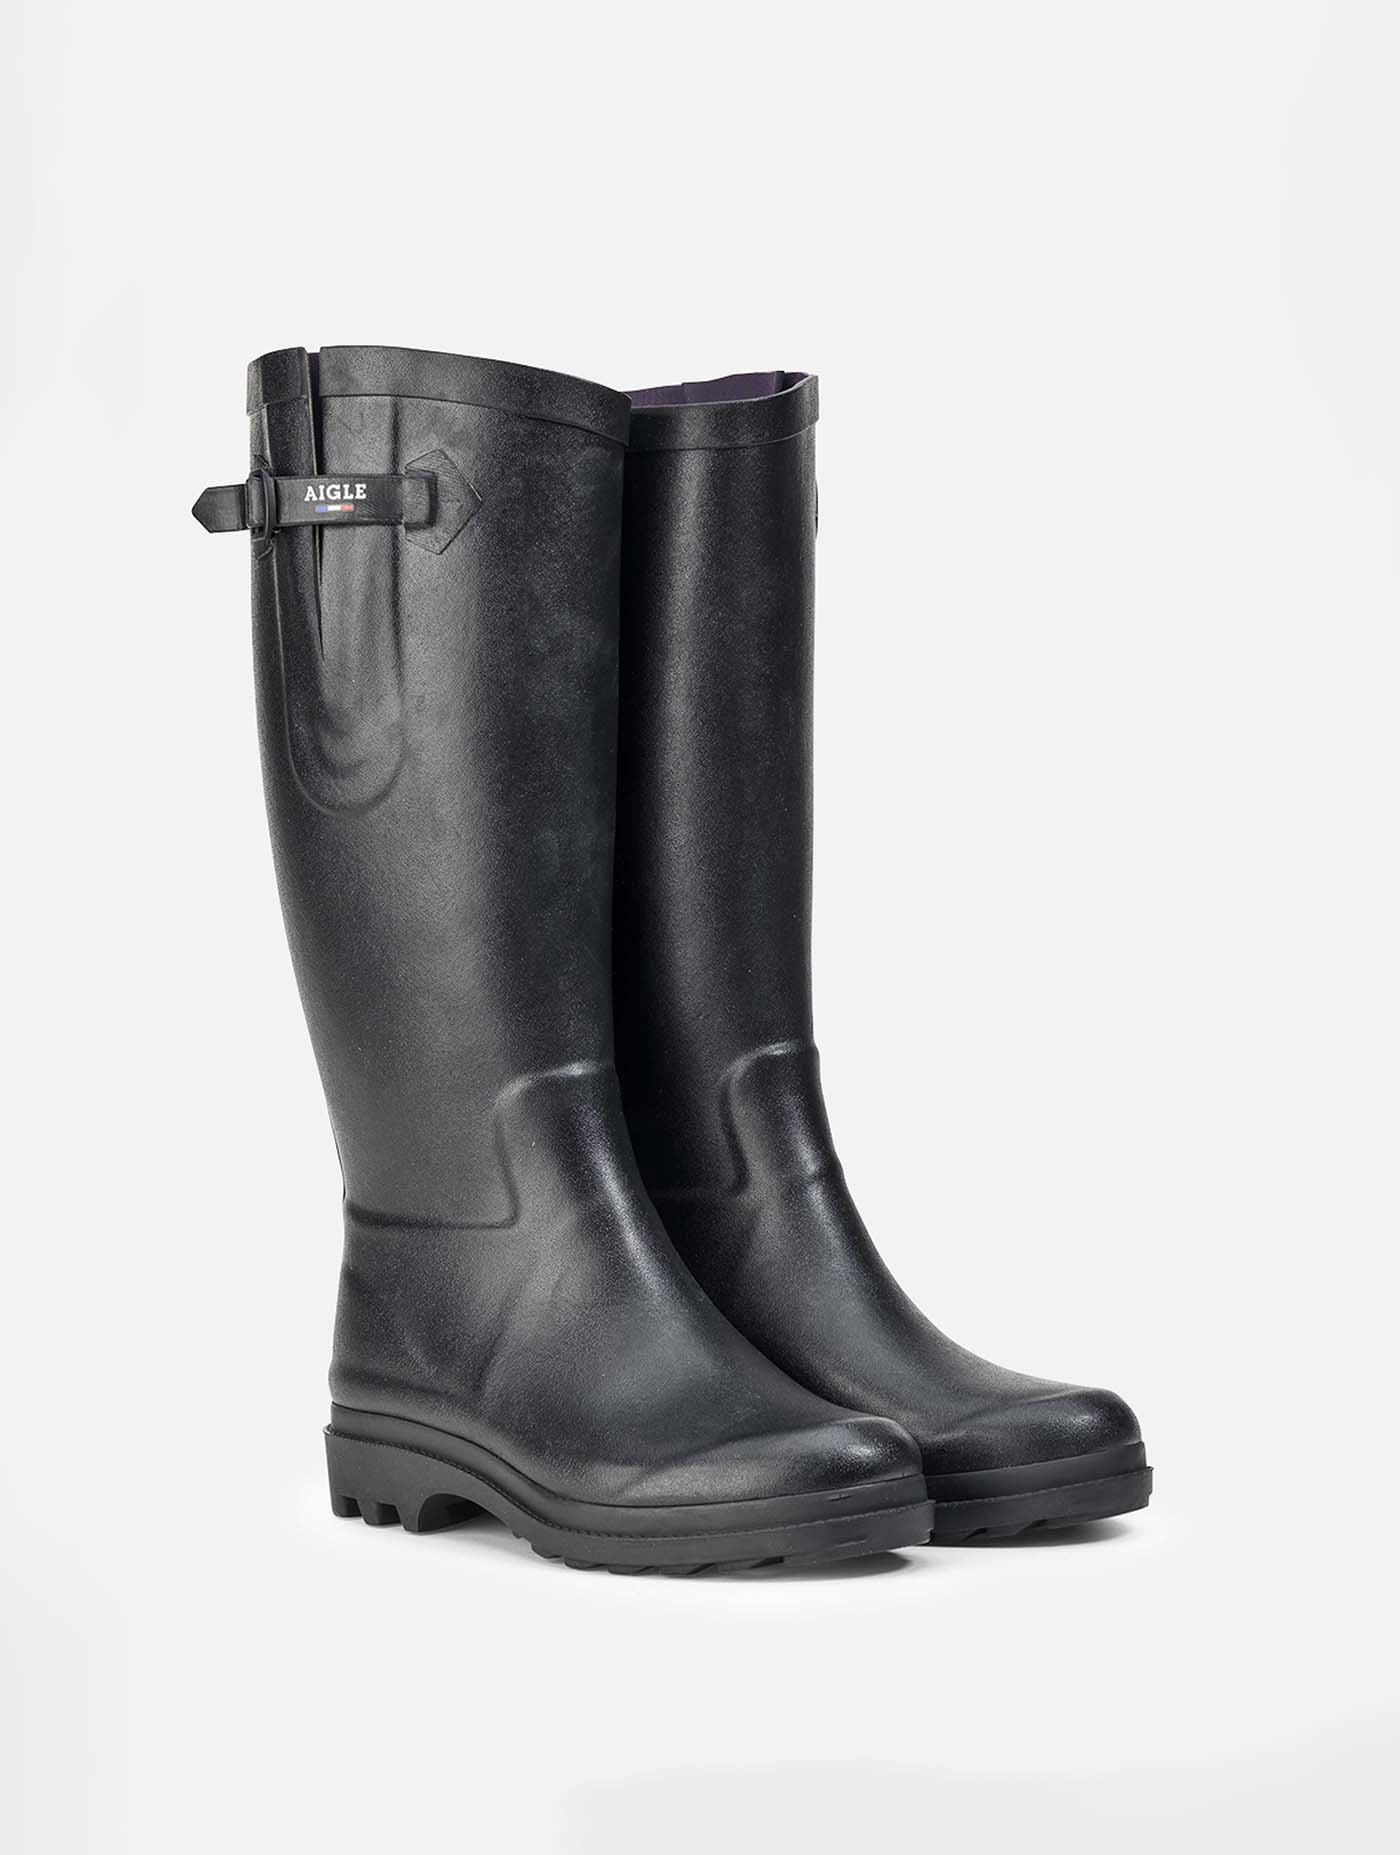 Aigle - Boyfriend rain boots, Made France Noir - Aiglentine® | AIGLE